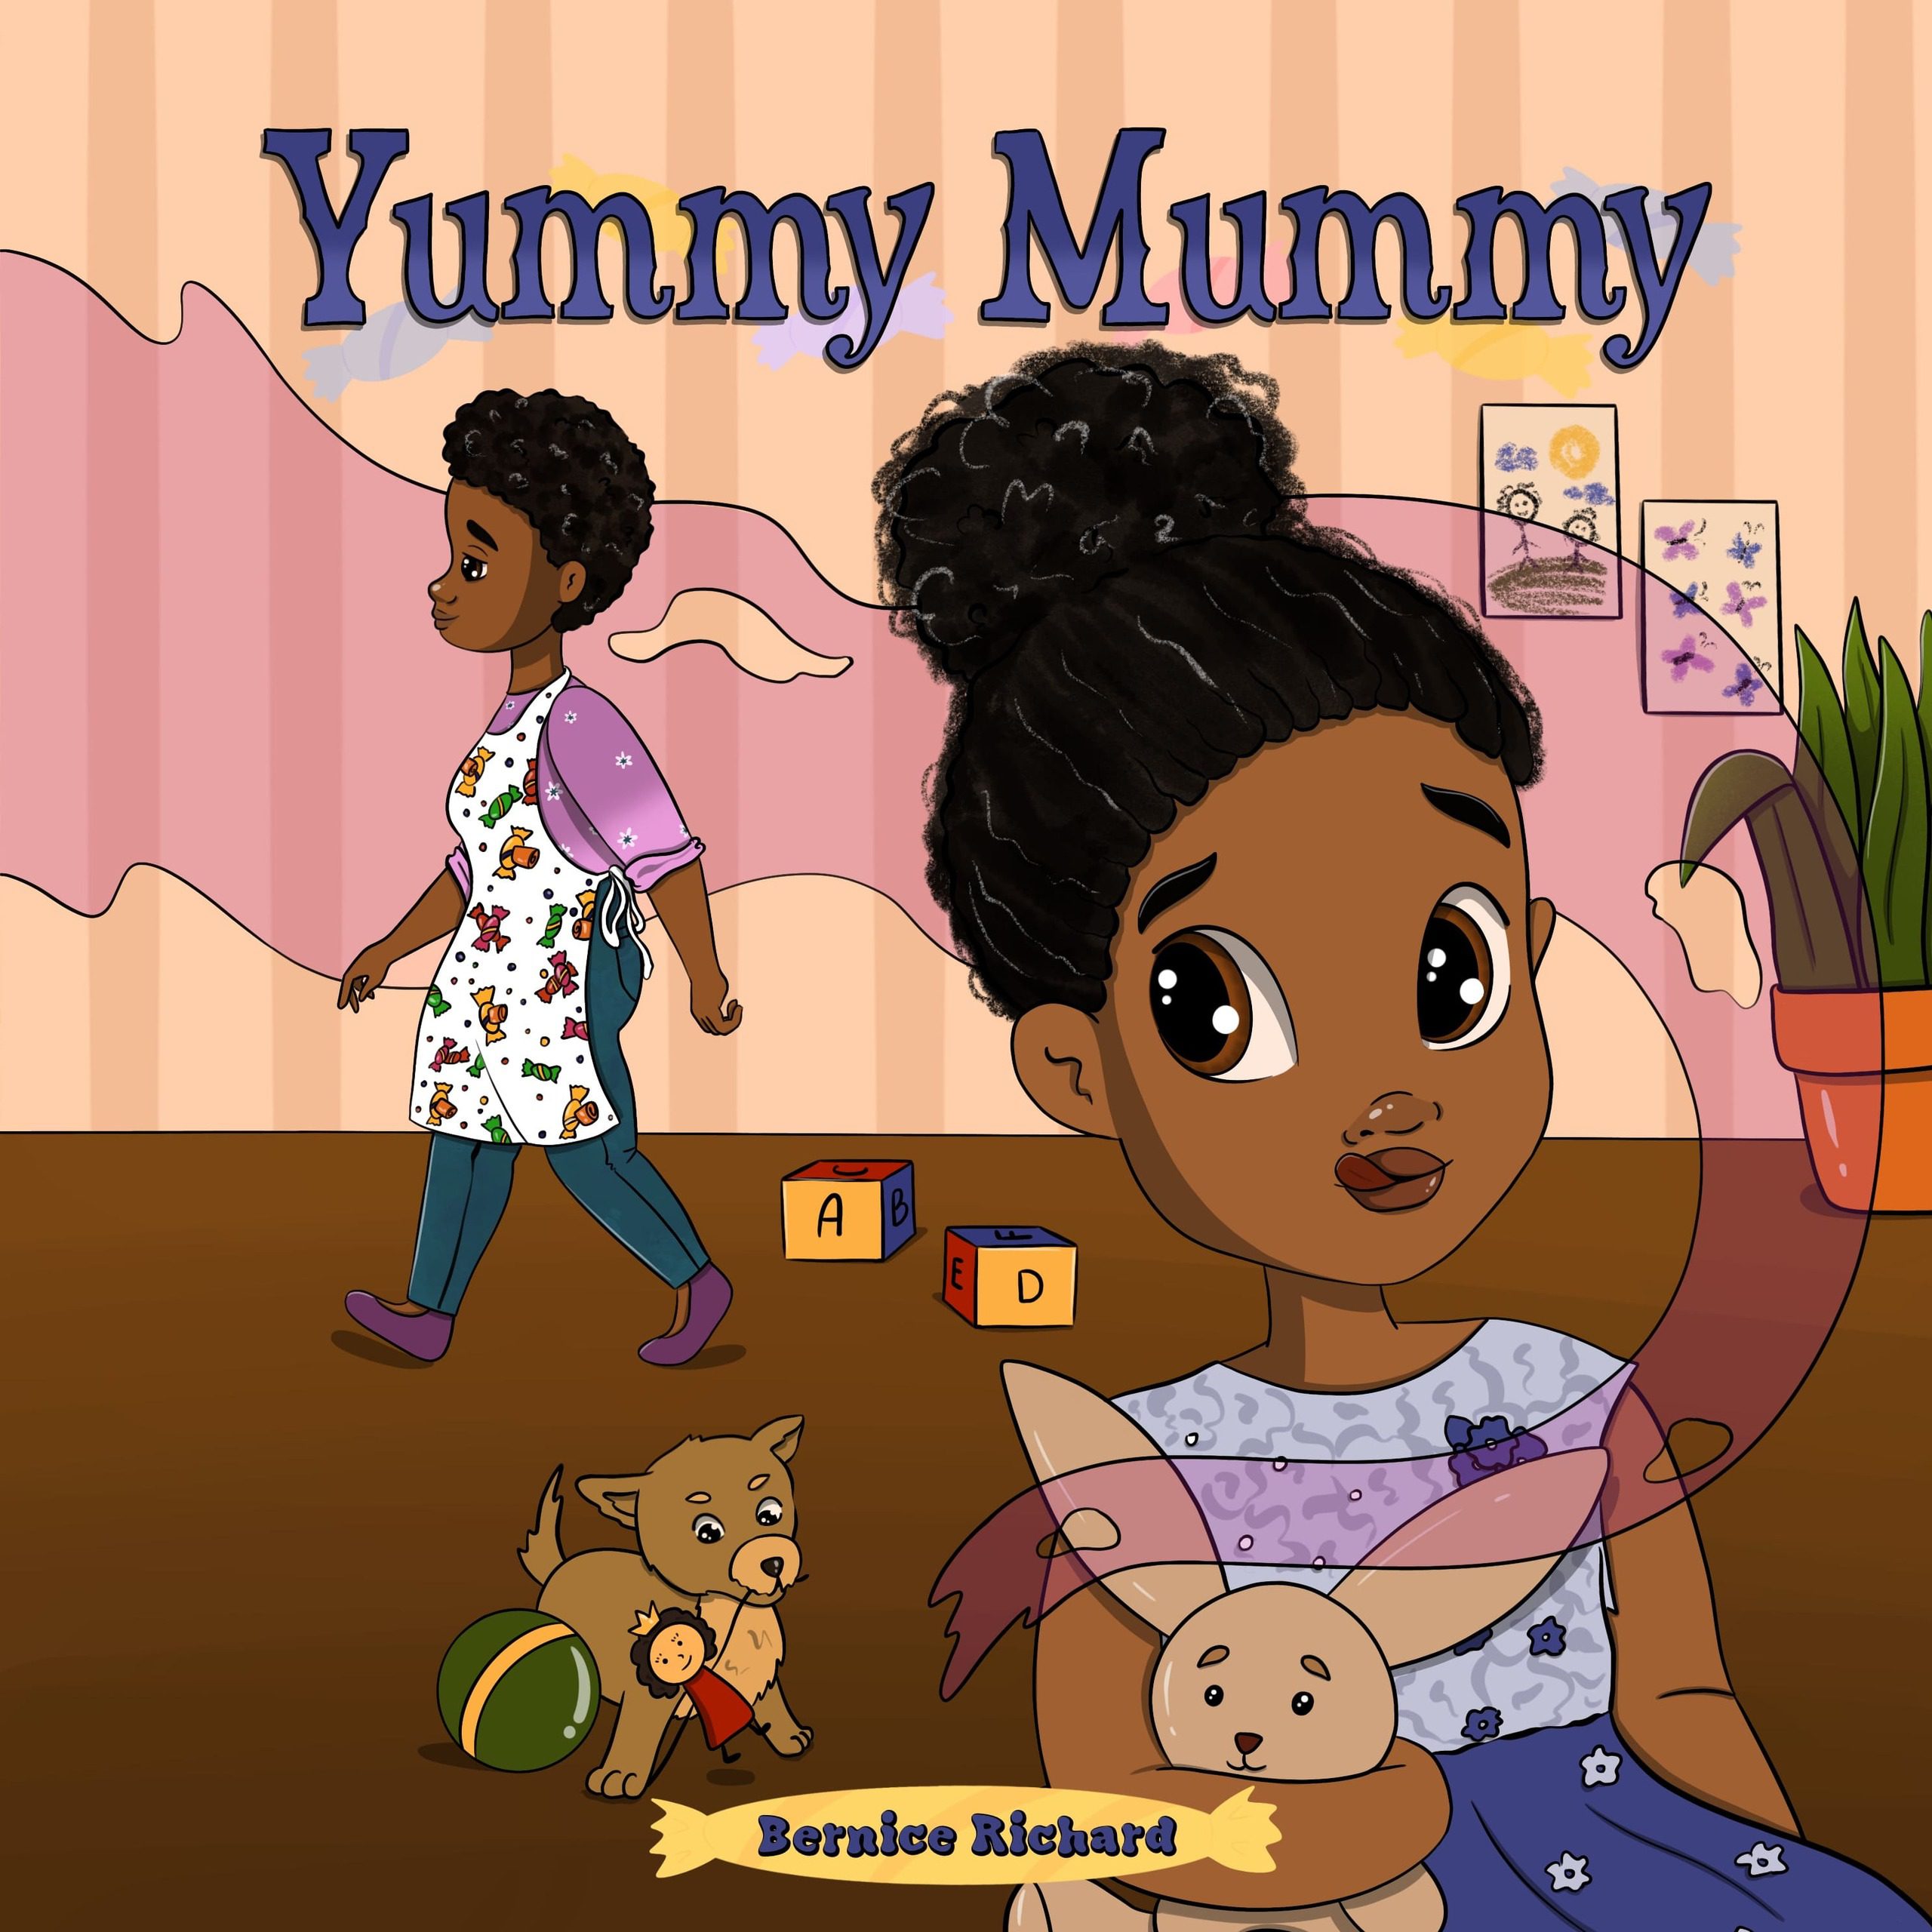 Yummy Mummy by Bernice Richard - Bernice Richard